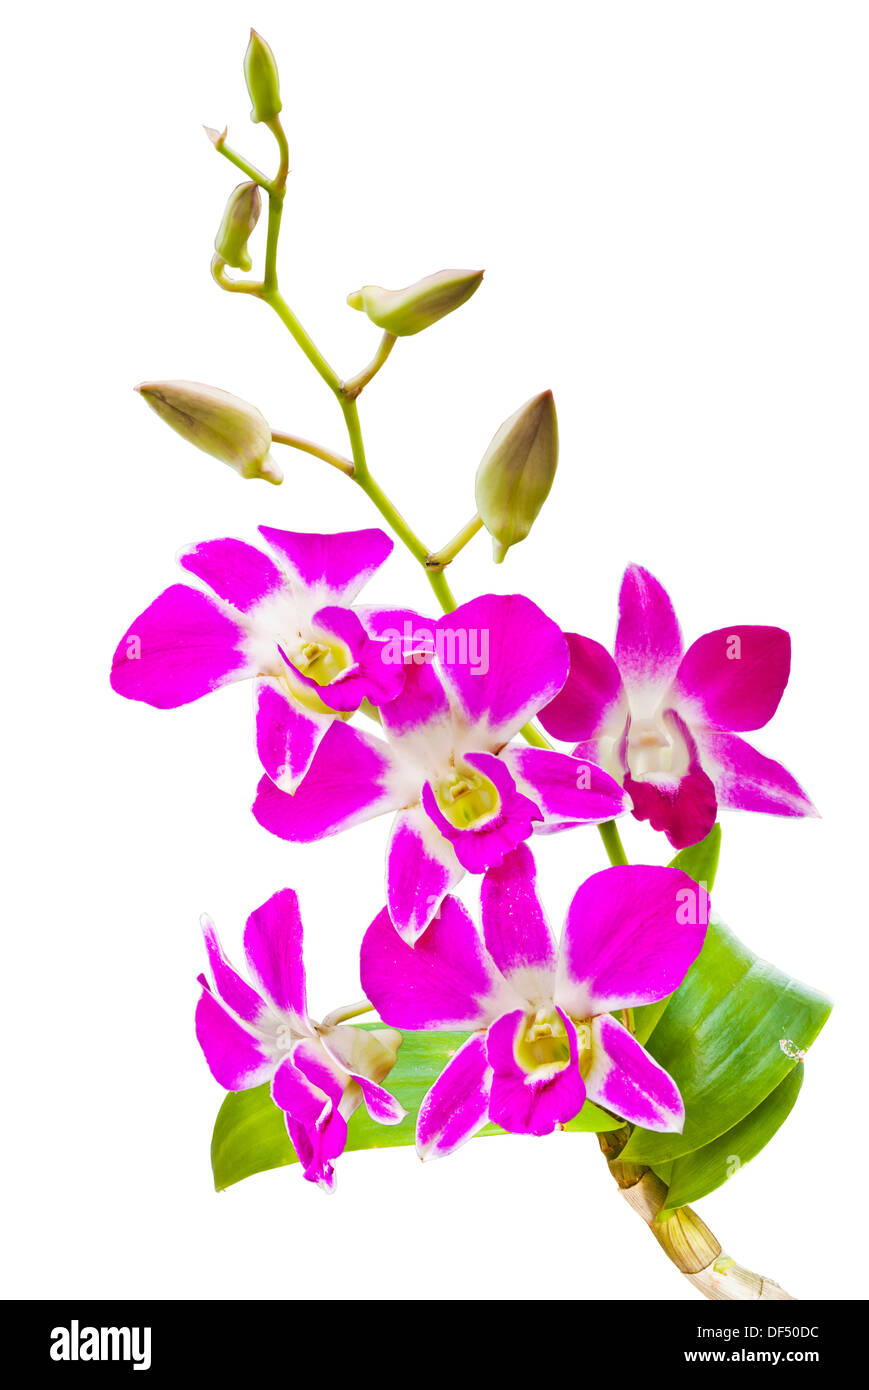 Résumé anniversaire fond beau beauté fleur botanique botanique bouquet lumineux de la direction générale de l'usine gros plan propre bud Banque D'Images